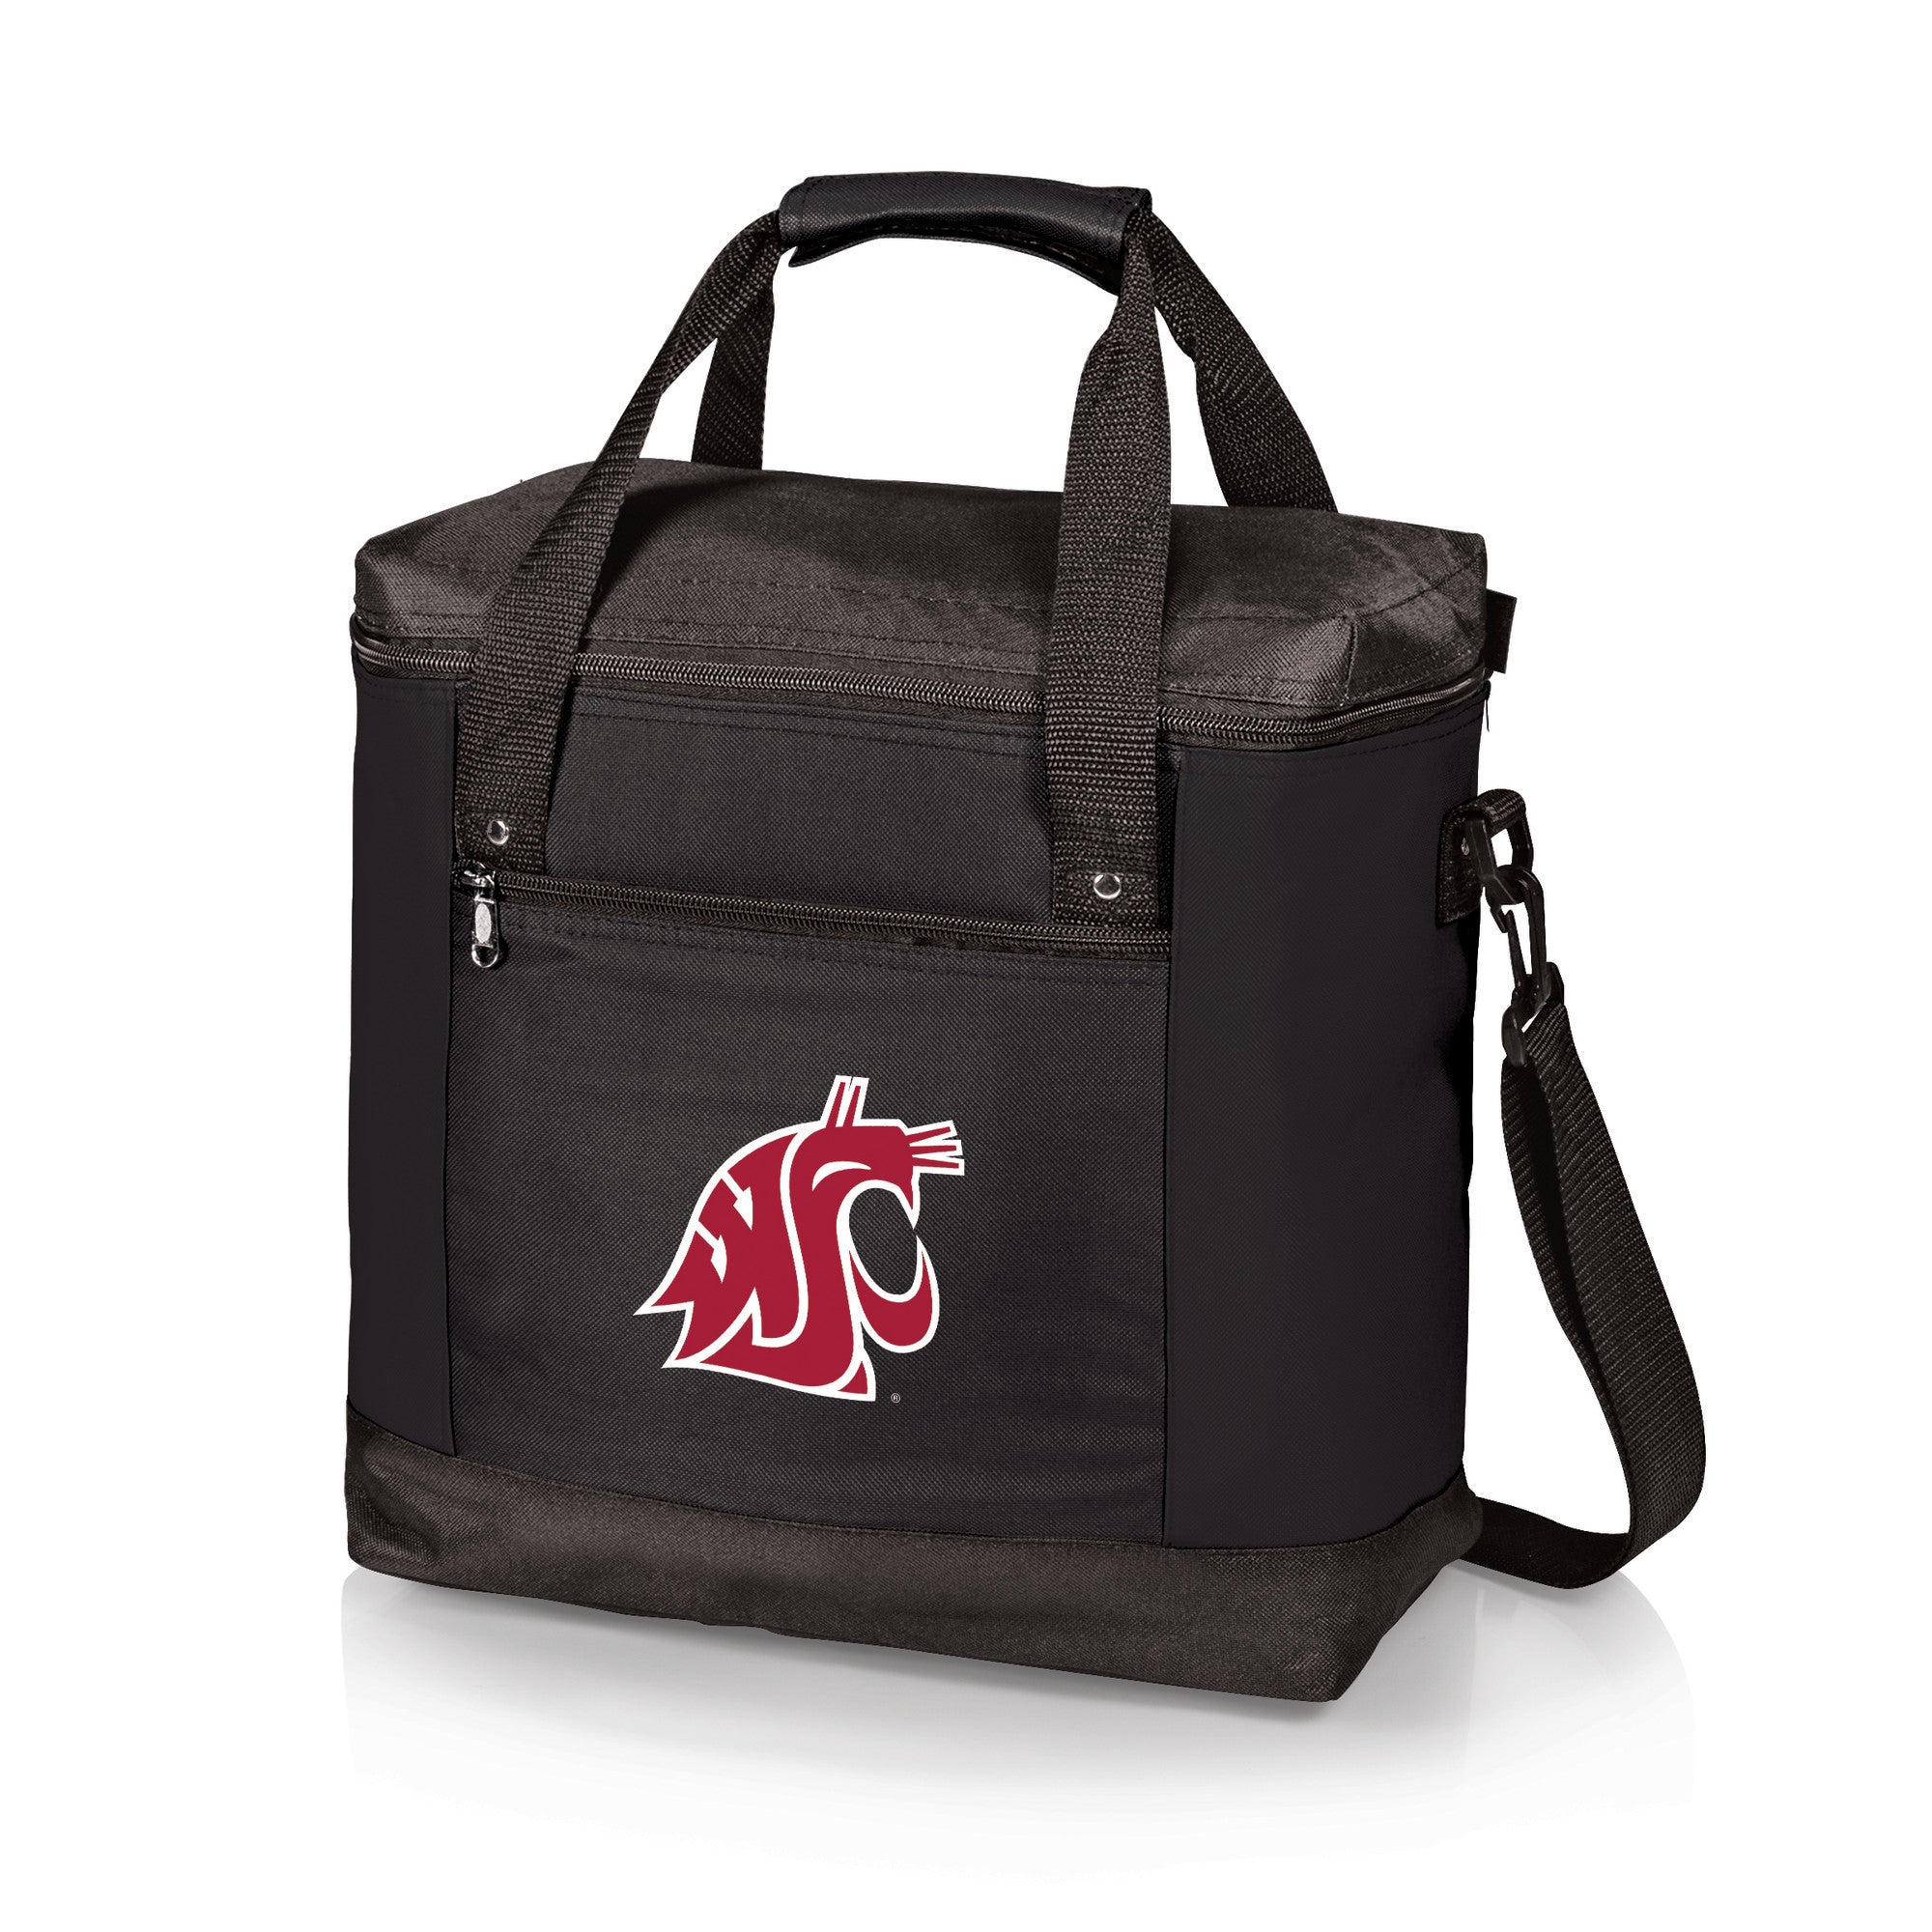 Washington State Cougars - Montero Cooler Tote Bag